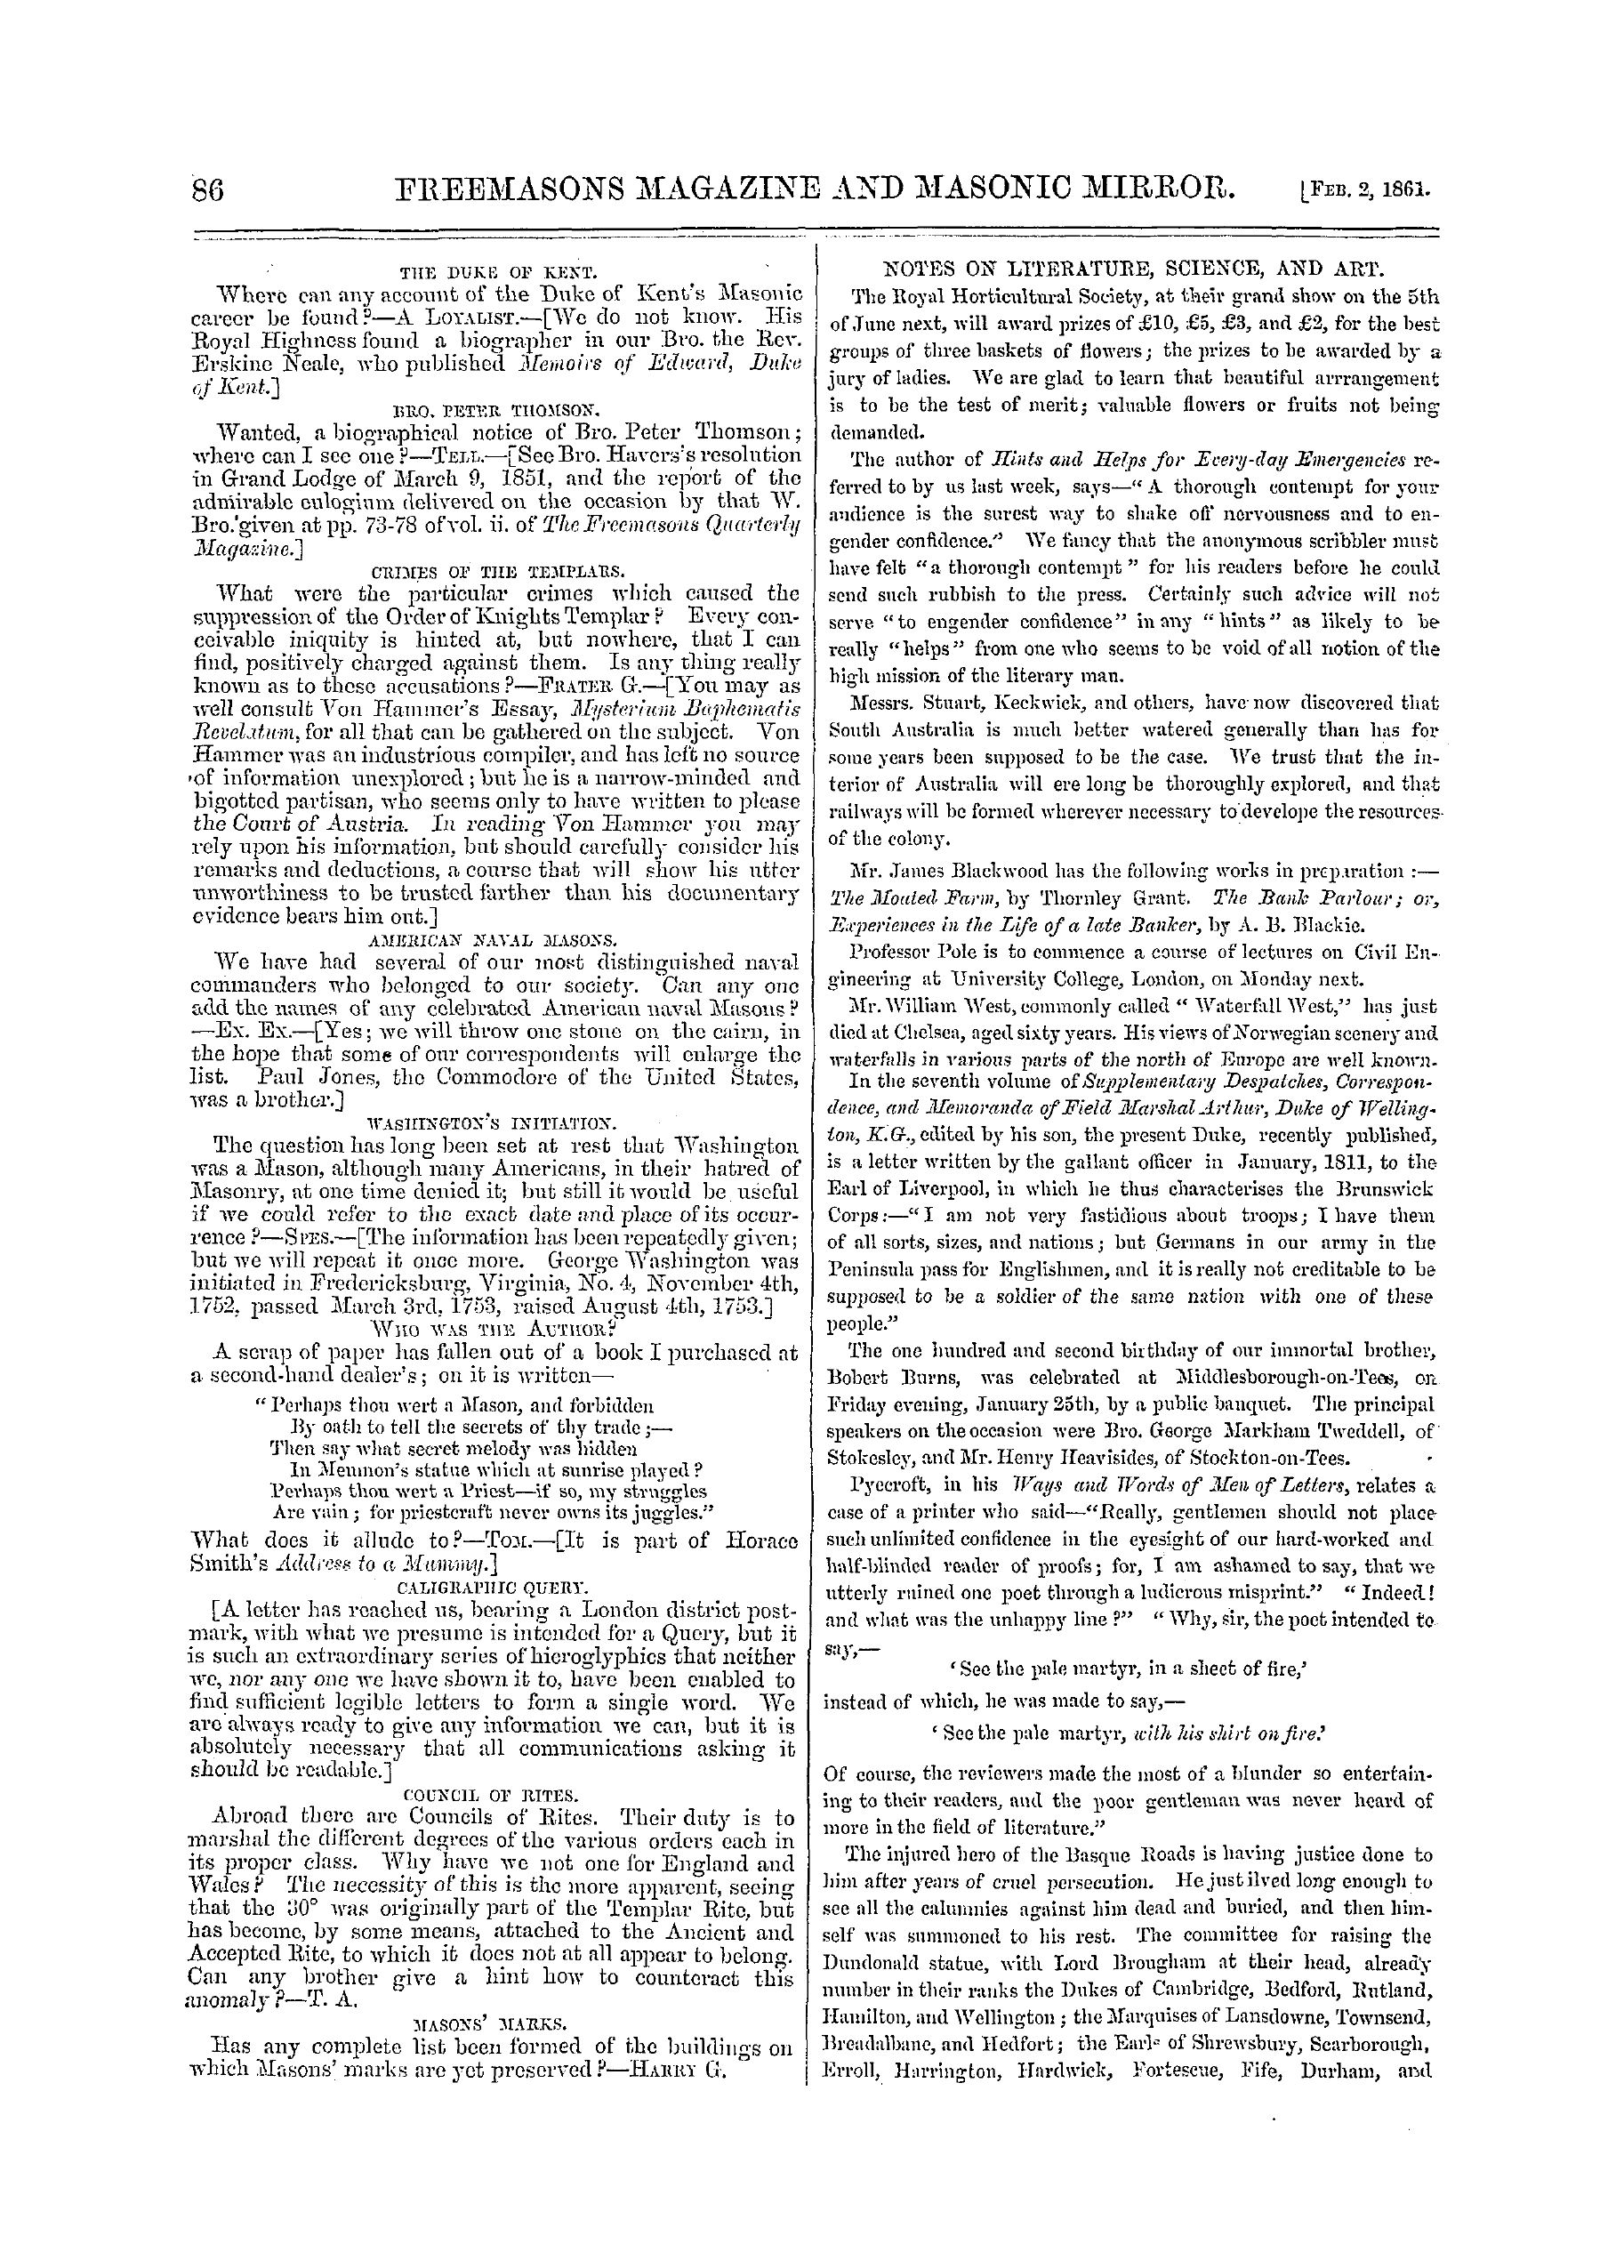 The Freemasons' Monthly Magazine: 1861-02-02: 6